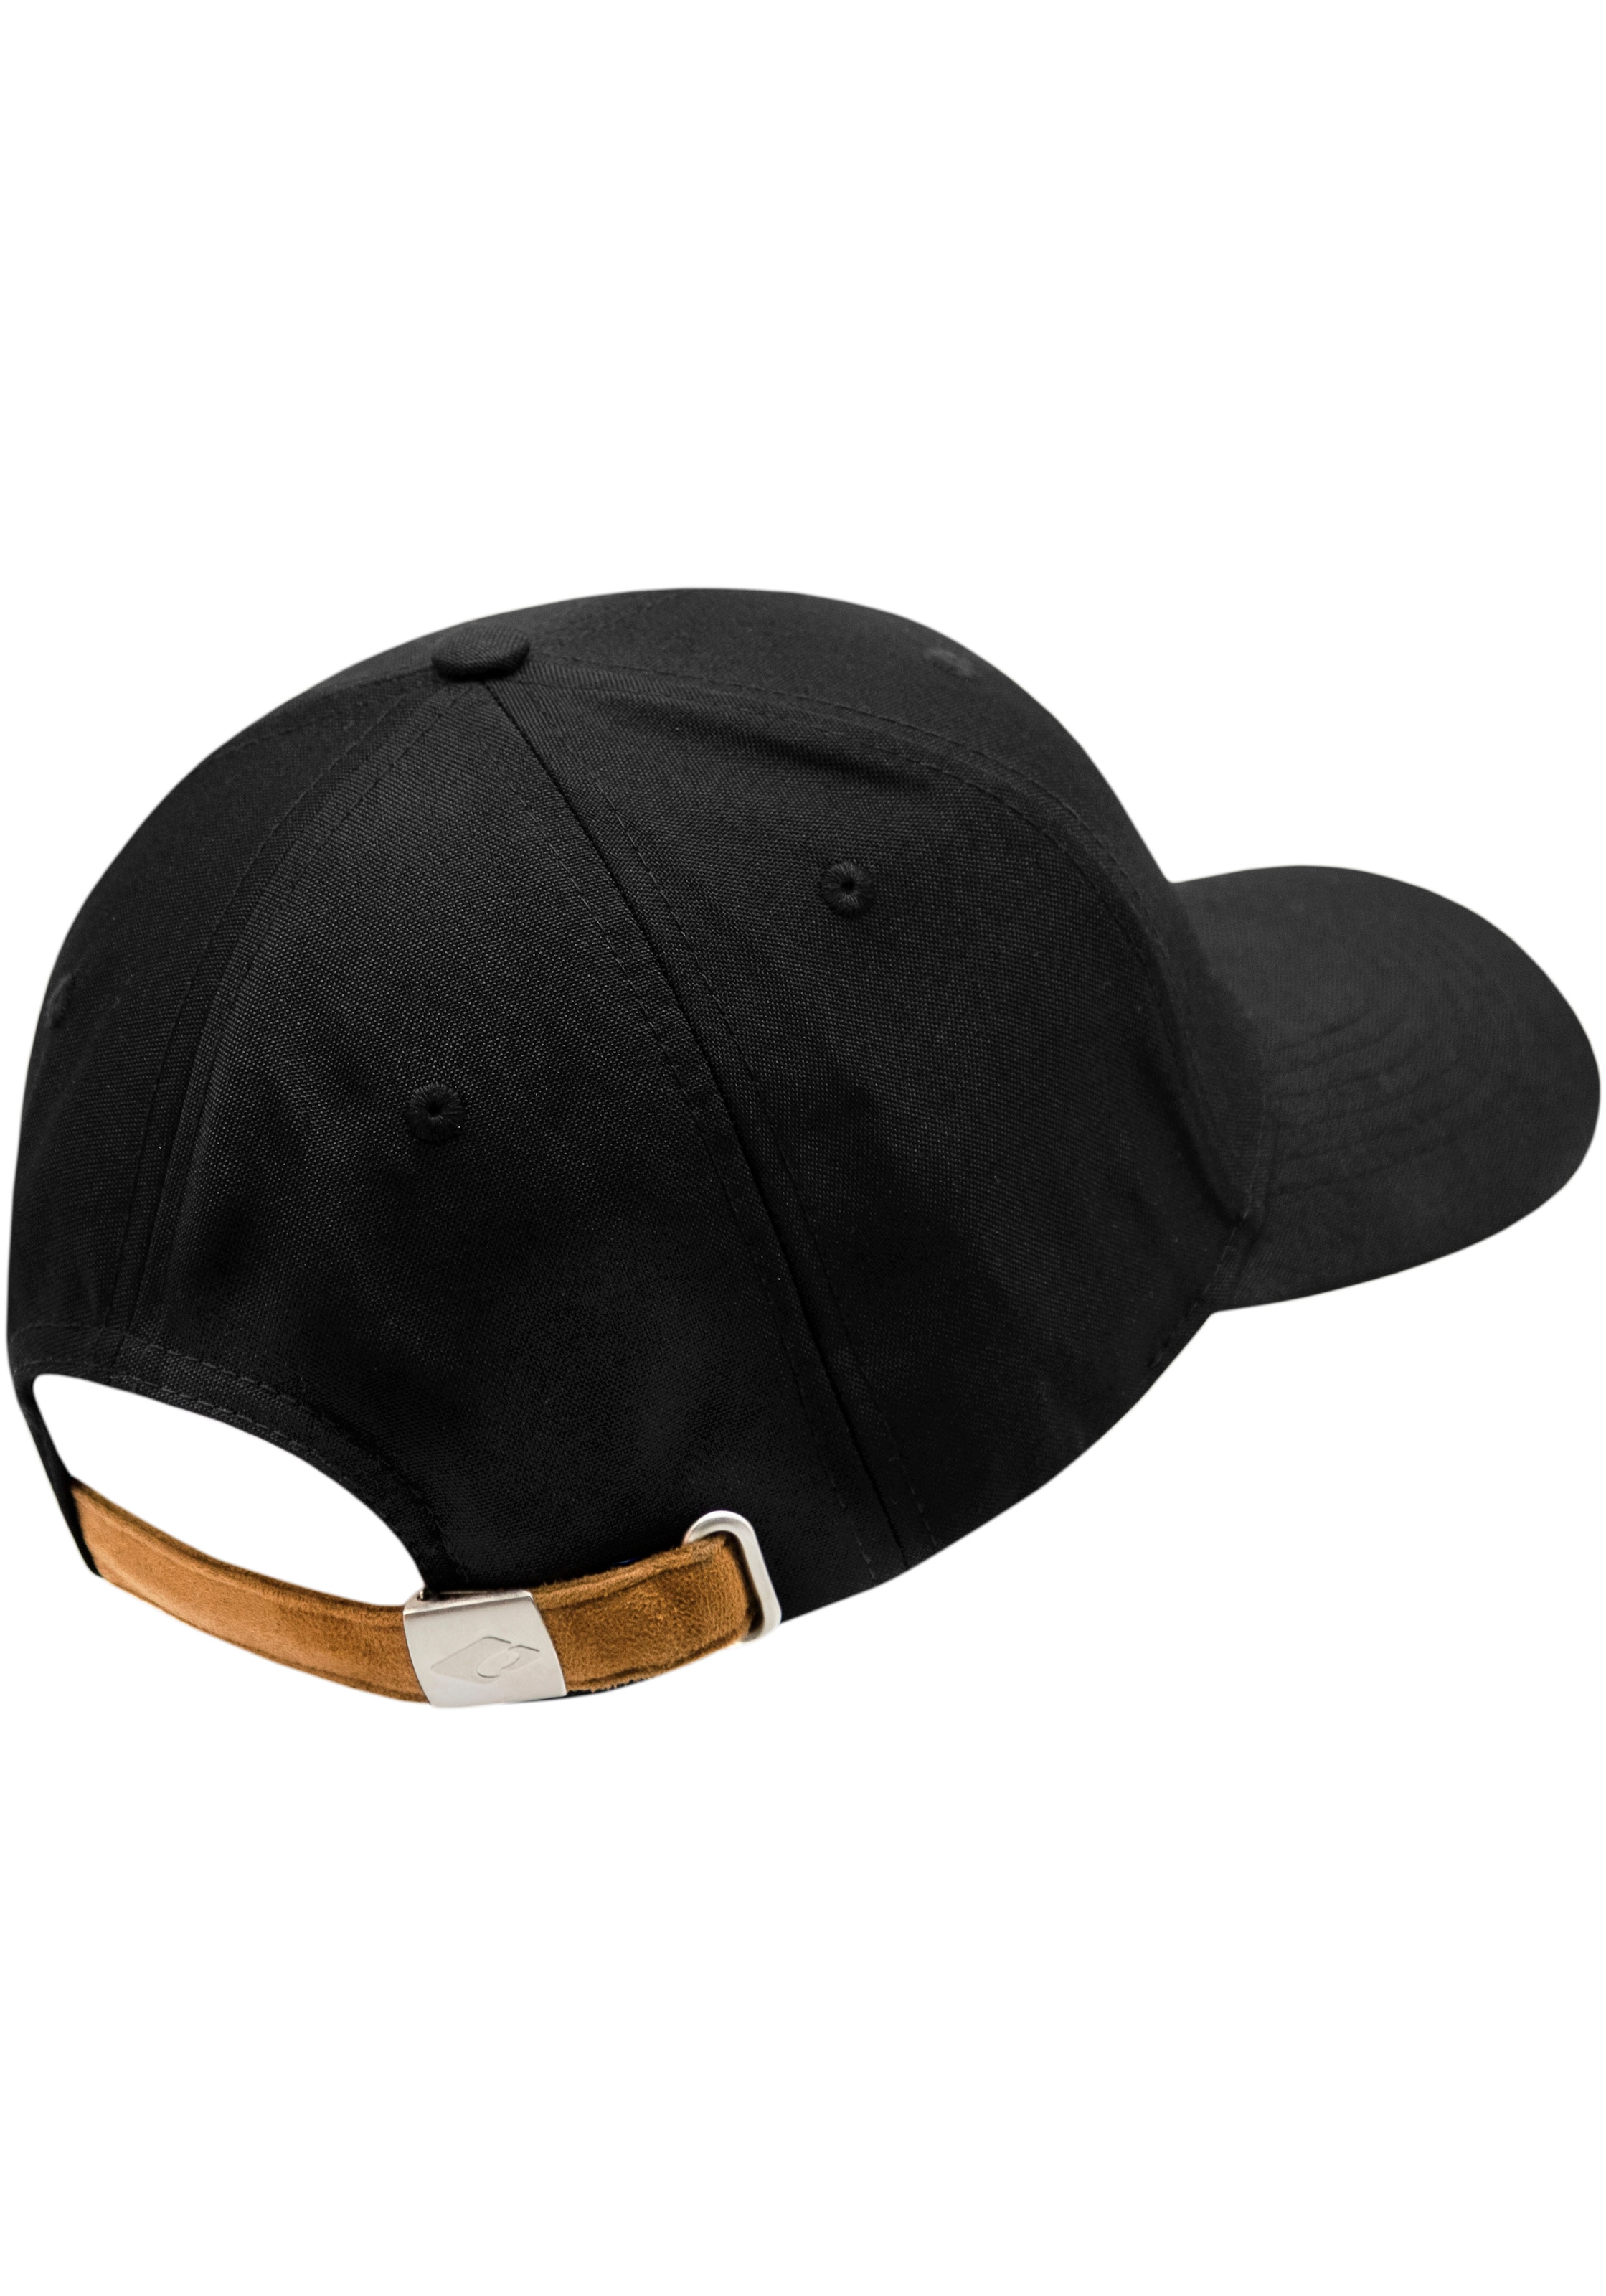 chillouts Baseball Cap, Amadora Size, im verstellbar Optik, Online-Shop kaufen melierter Hat One in